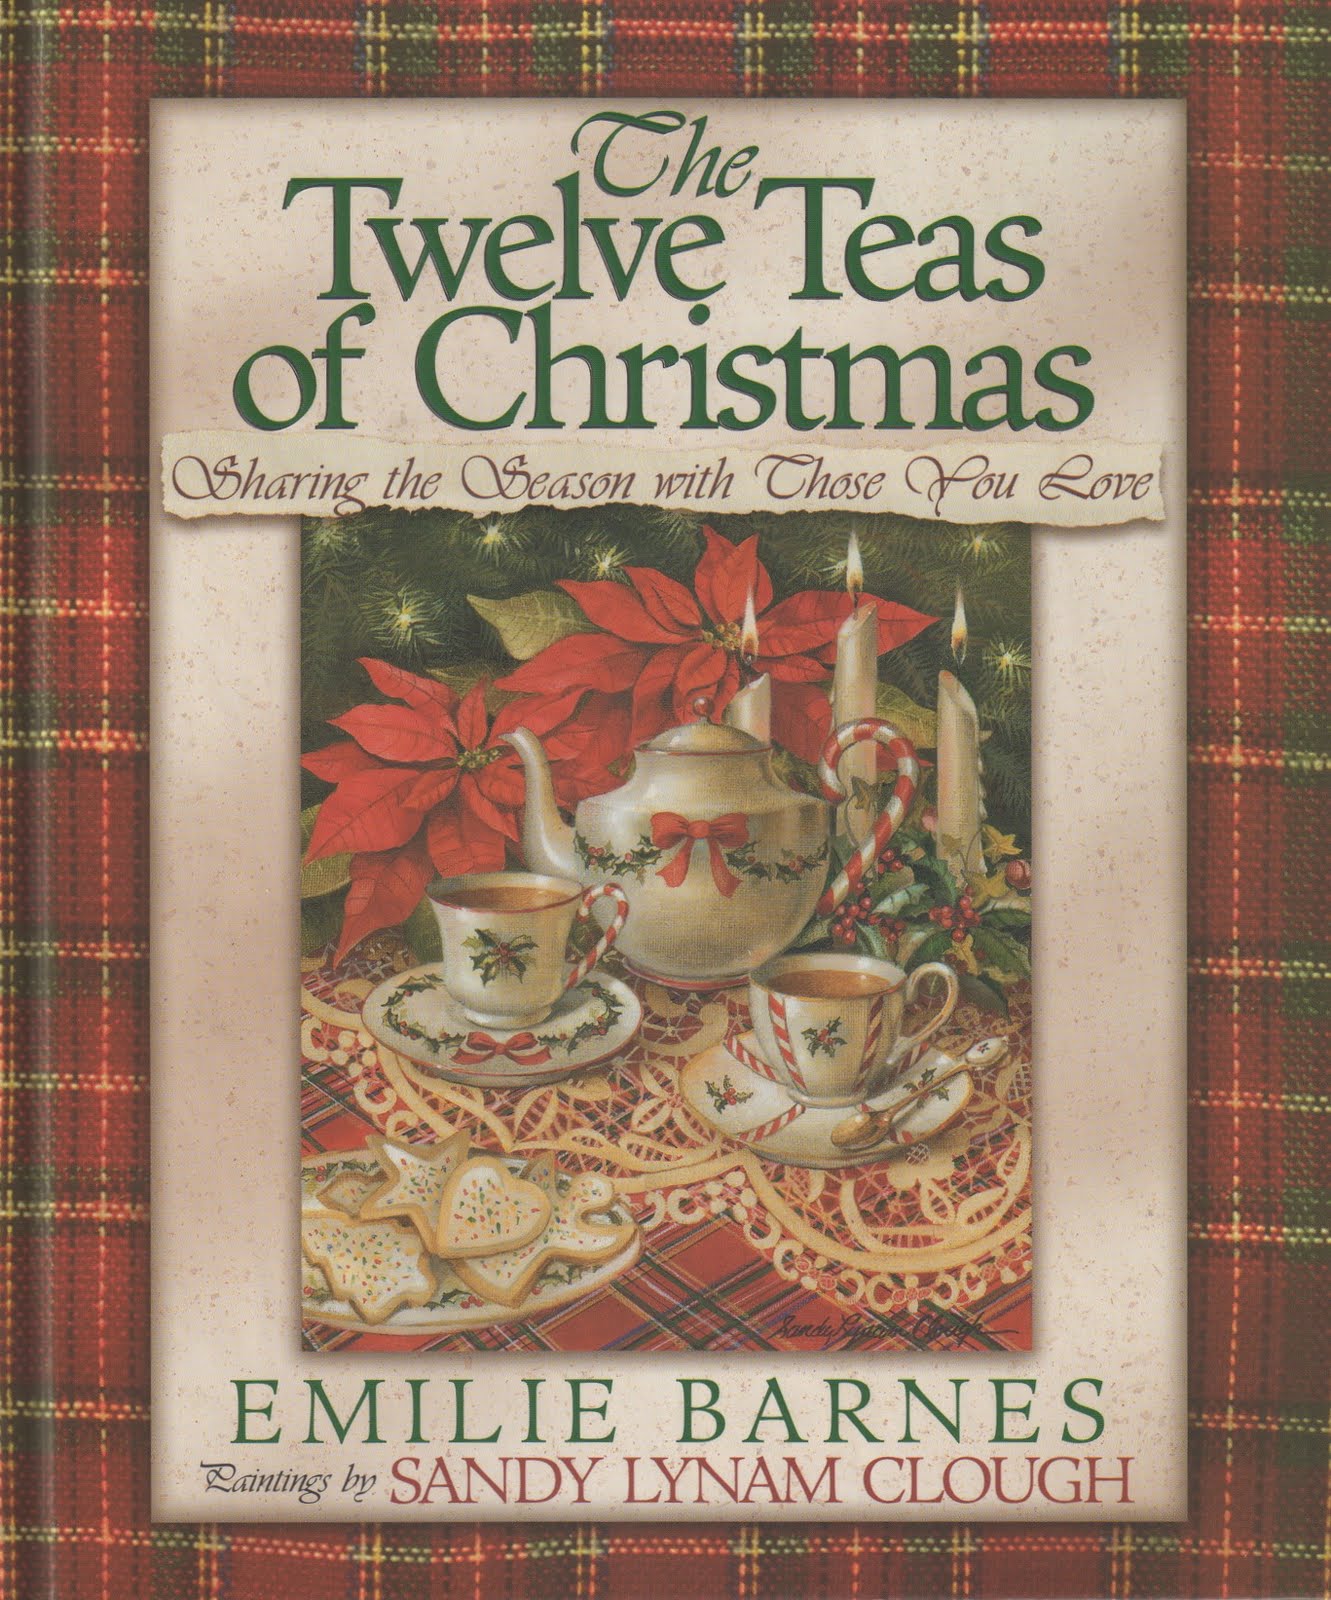 The Twelve Teas of Christmas Emilie Barnes and Sandy Lynam Clough